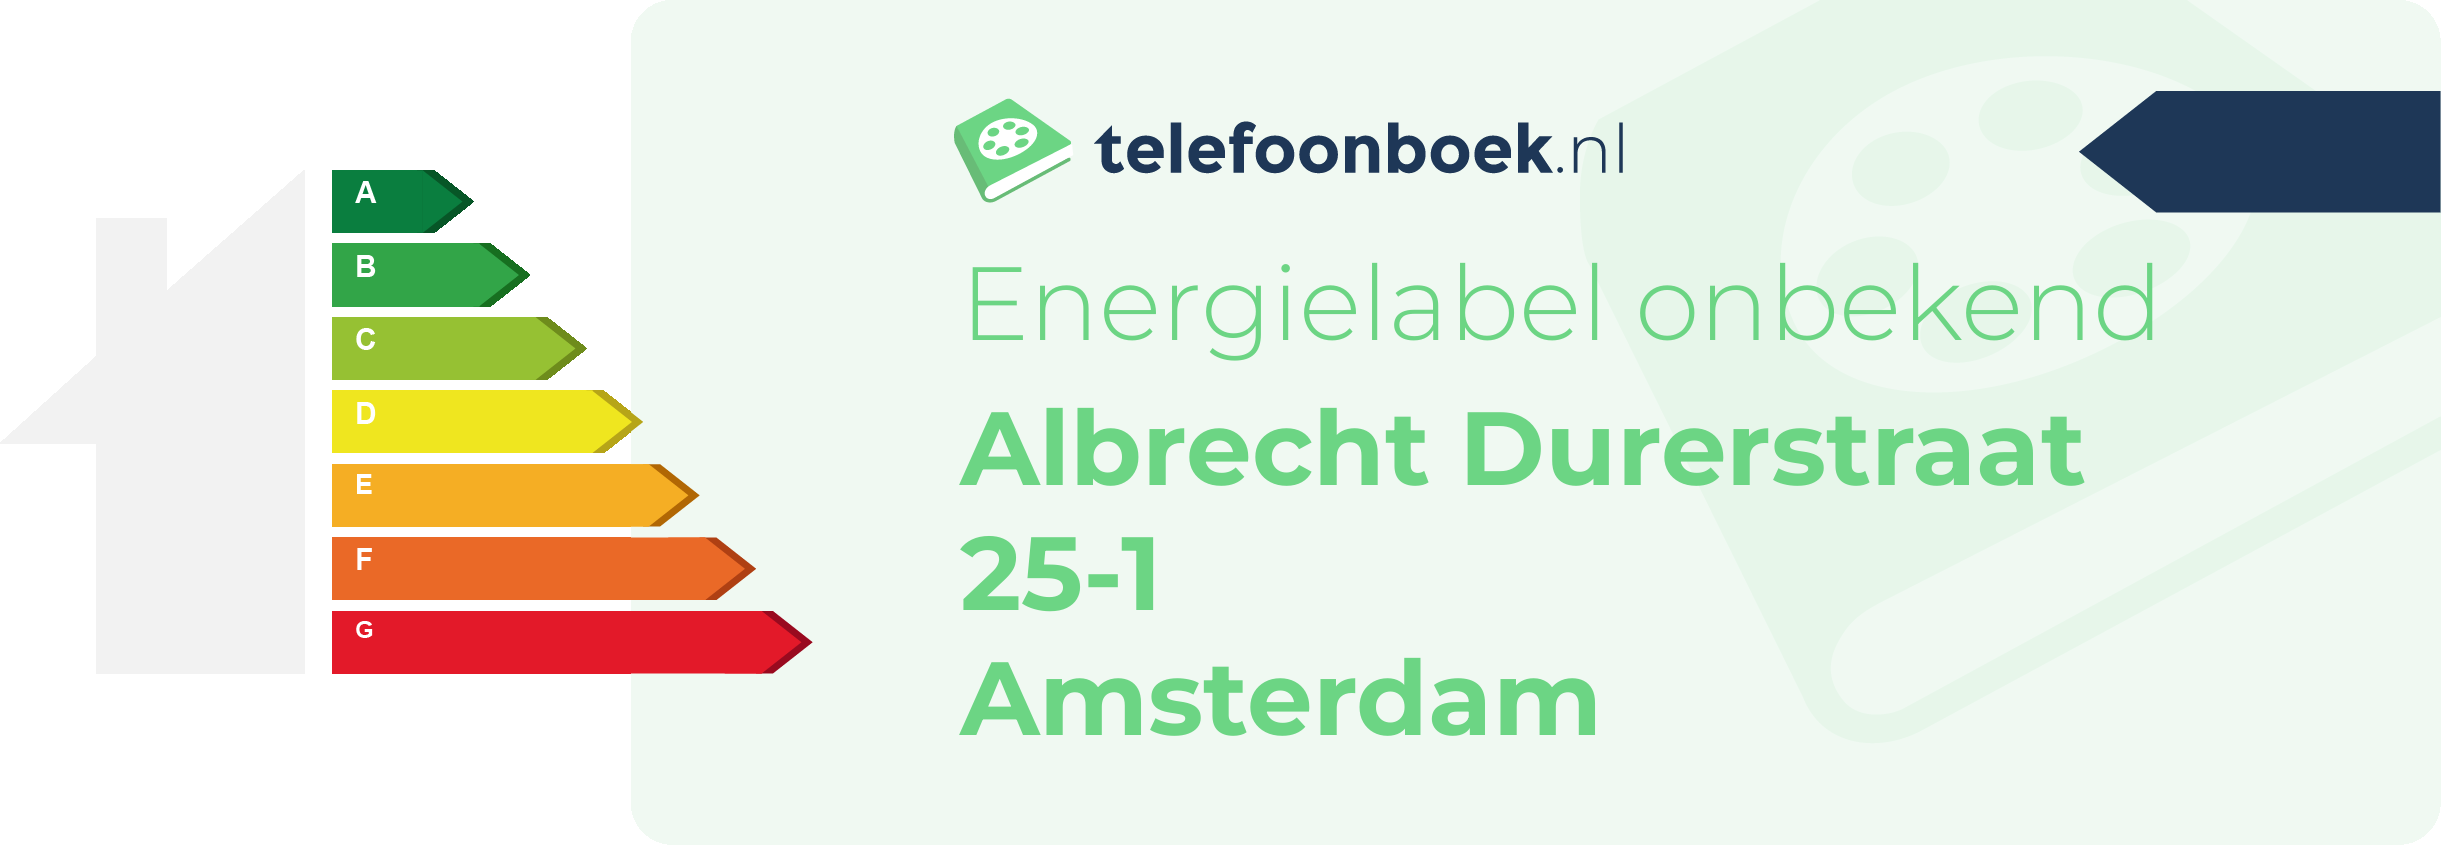 Energielabel Albrecht Durerstraat 25-1 Amsterdam